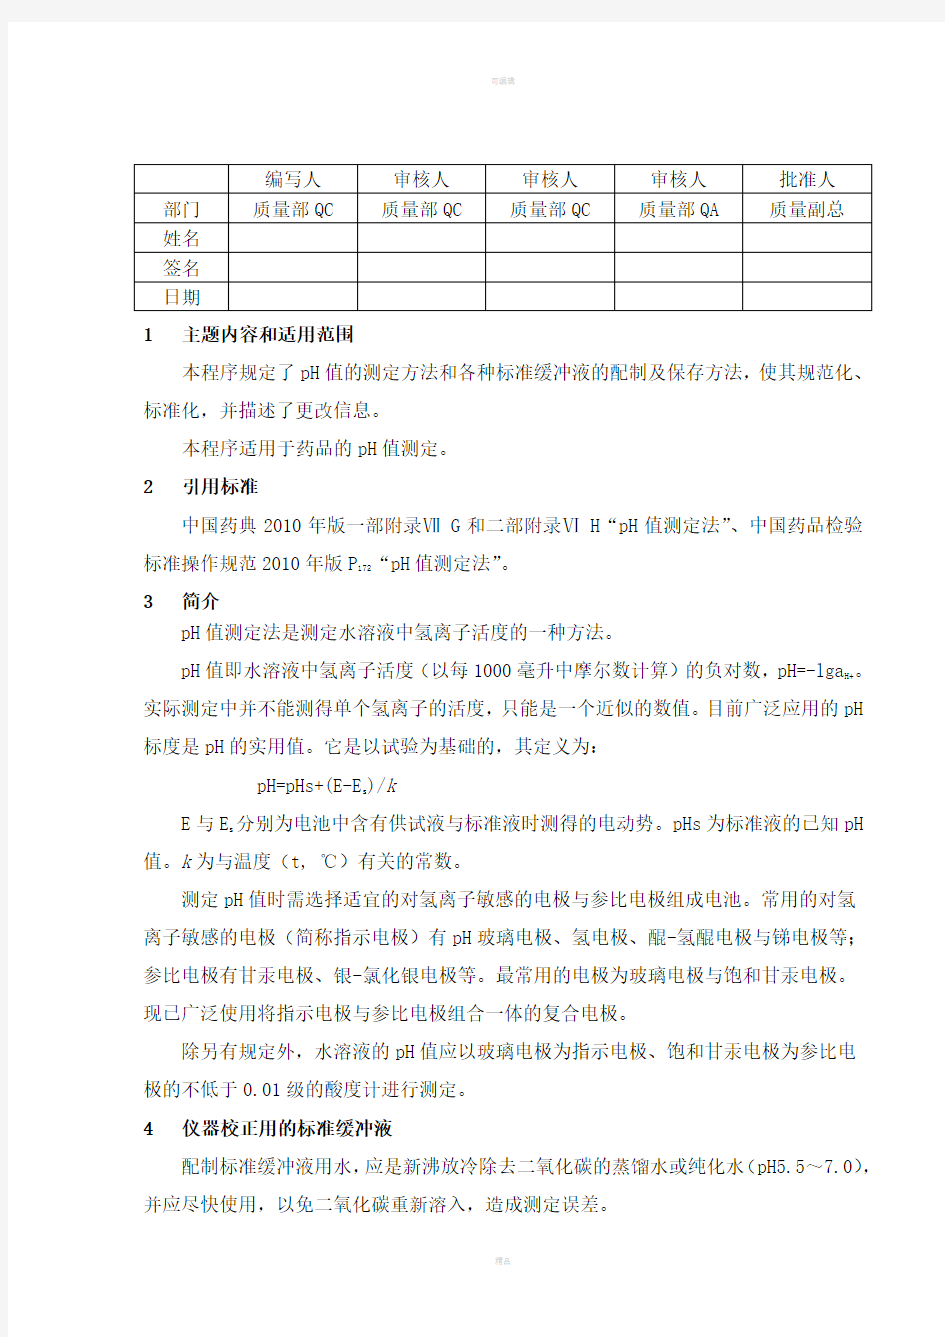 中国药品检验标准操作规范2010年版pH值测定